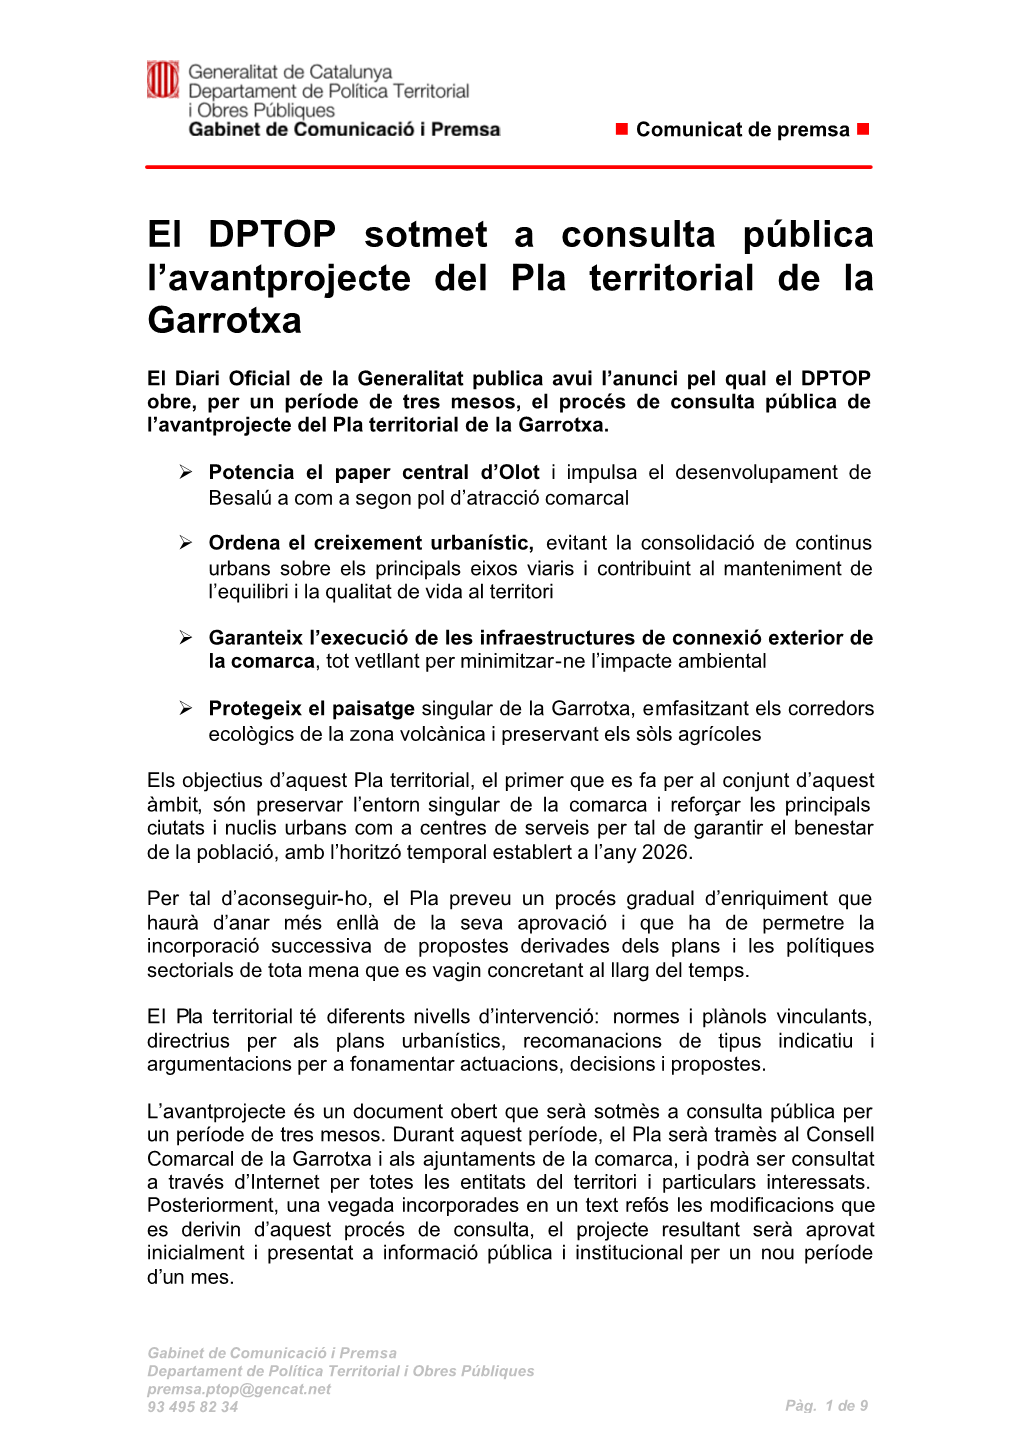 El DPTOP Sotmet a Consulta Pública L'avantprojecte Del Pla